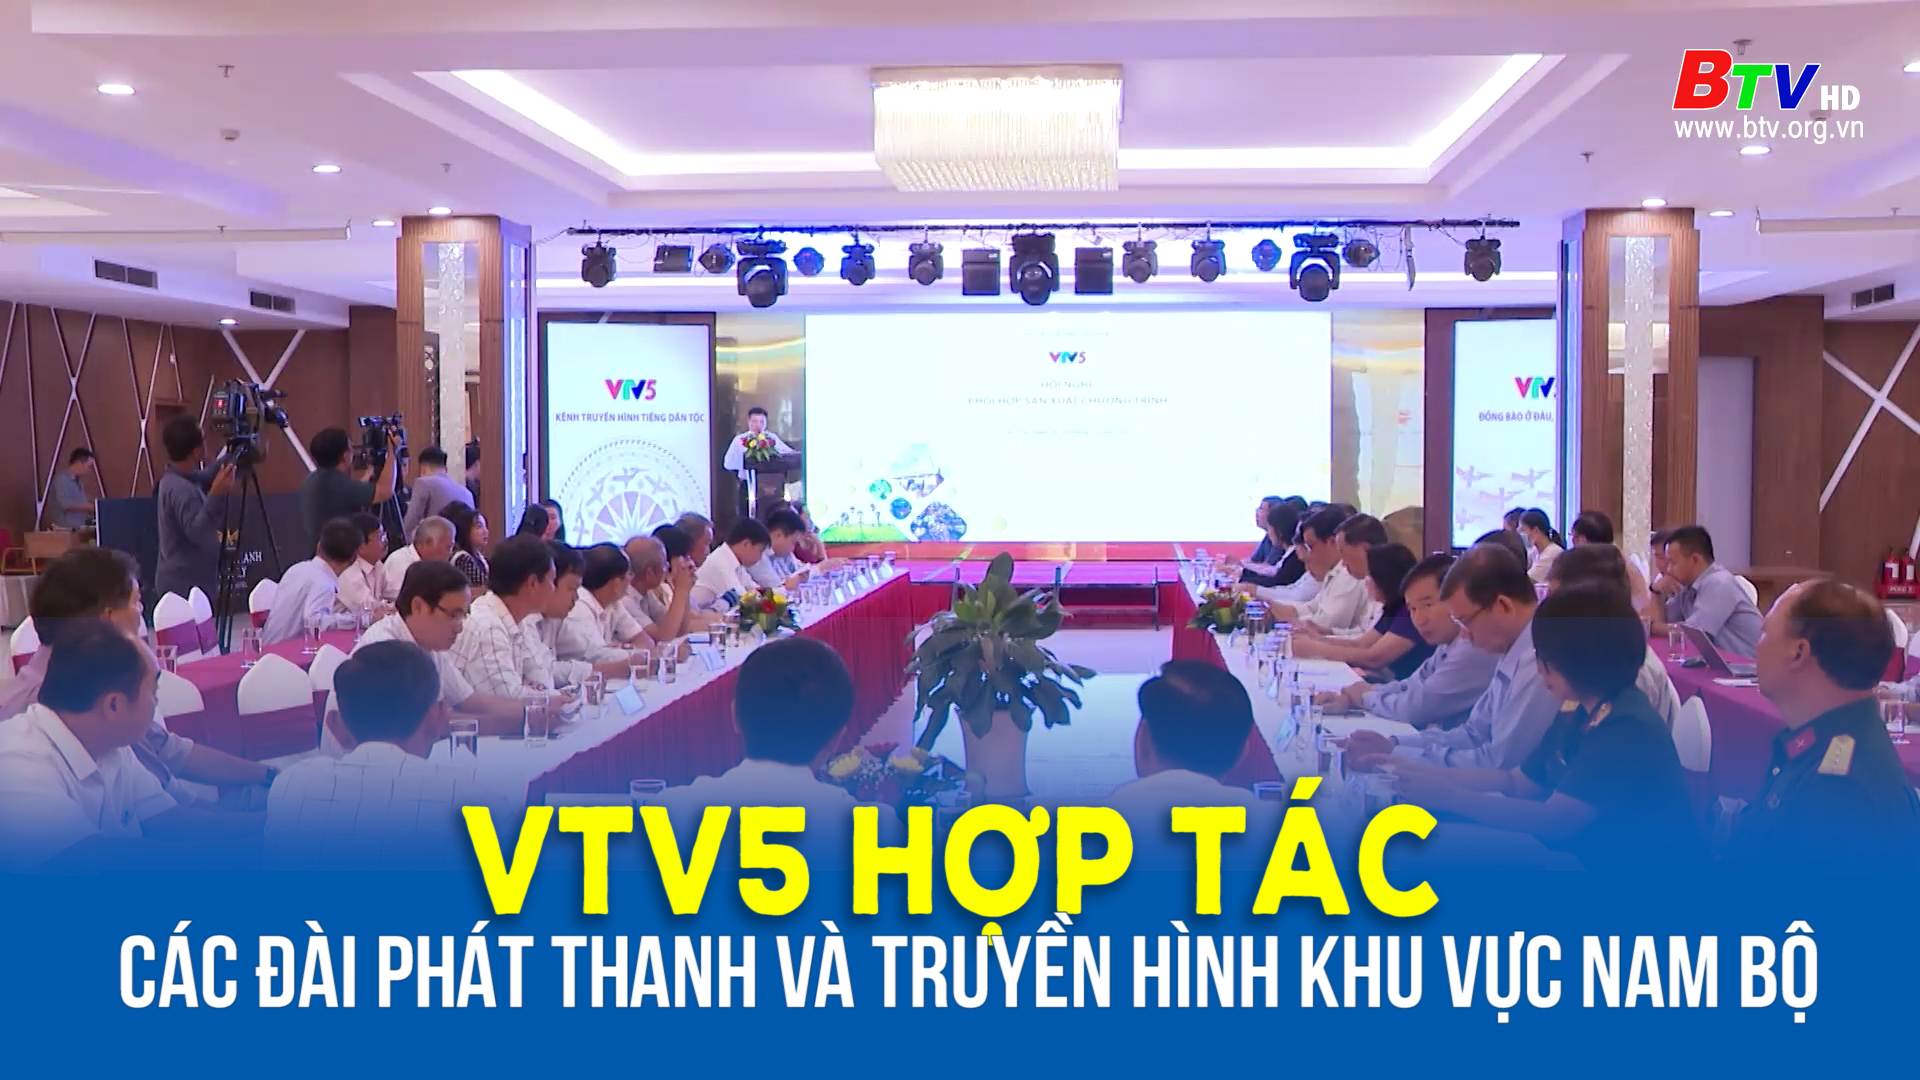 VTV5 hợp tác với các Đài phát thanh và truyền hình khu vực Nam bộ 